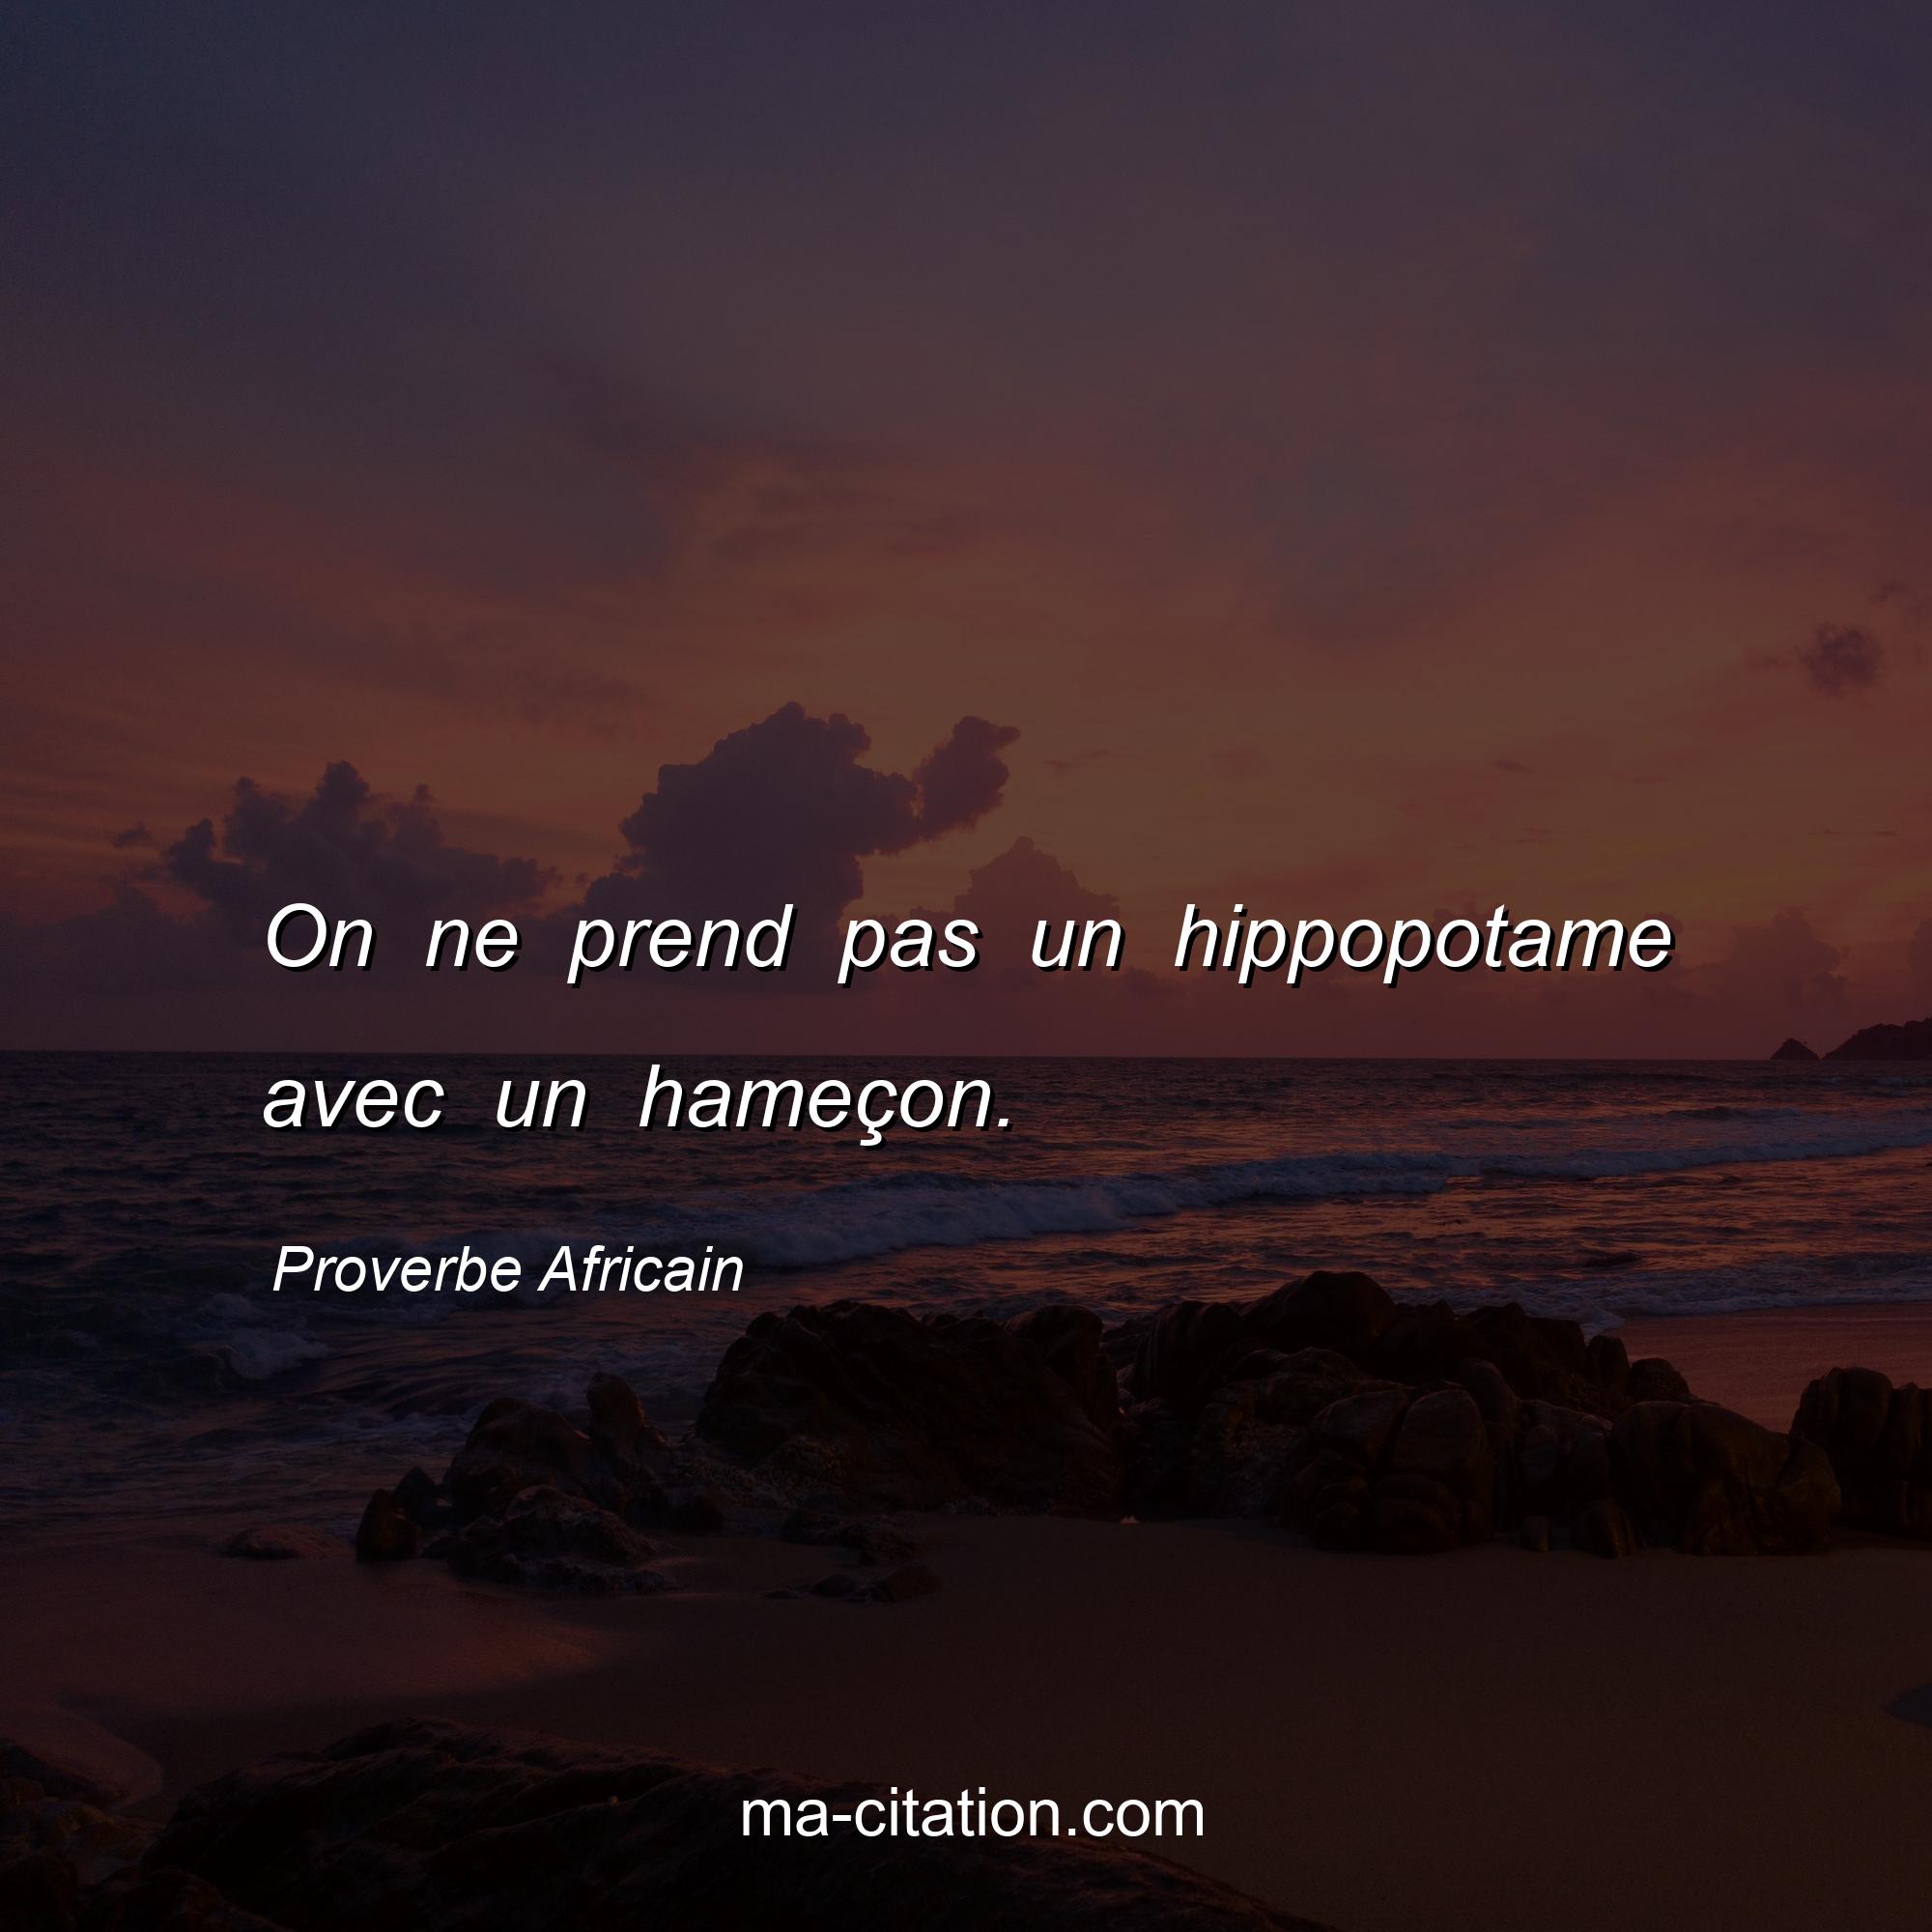 Proverbe Africain : On ne prend pas un hippopotame avec un hameçon.